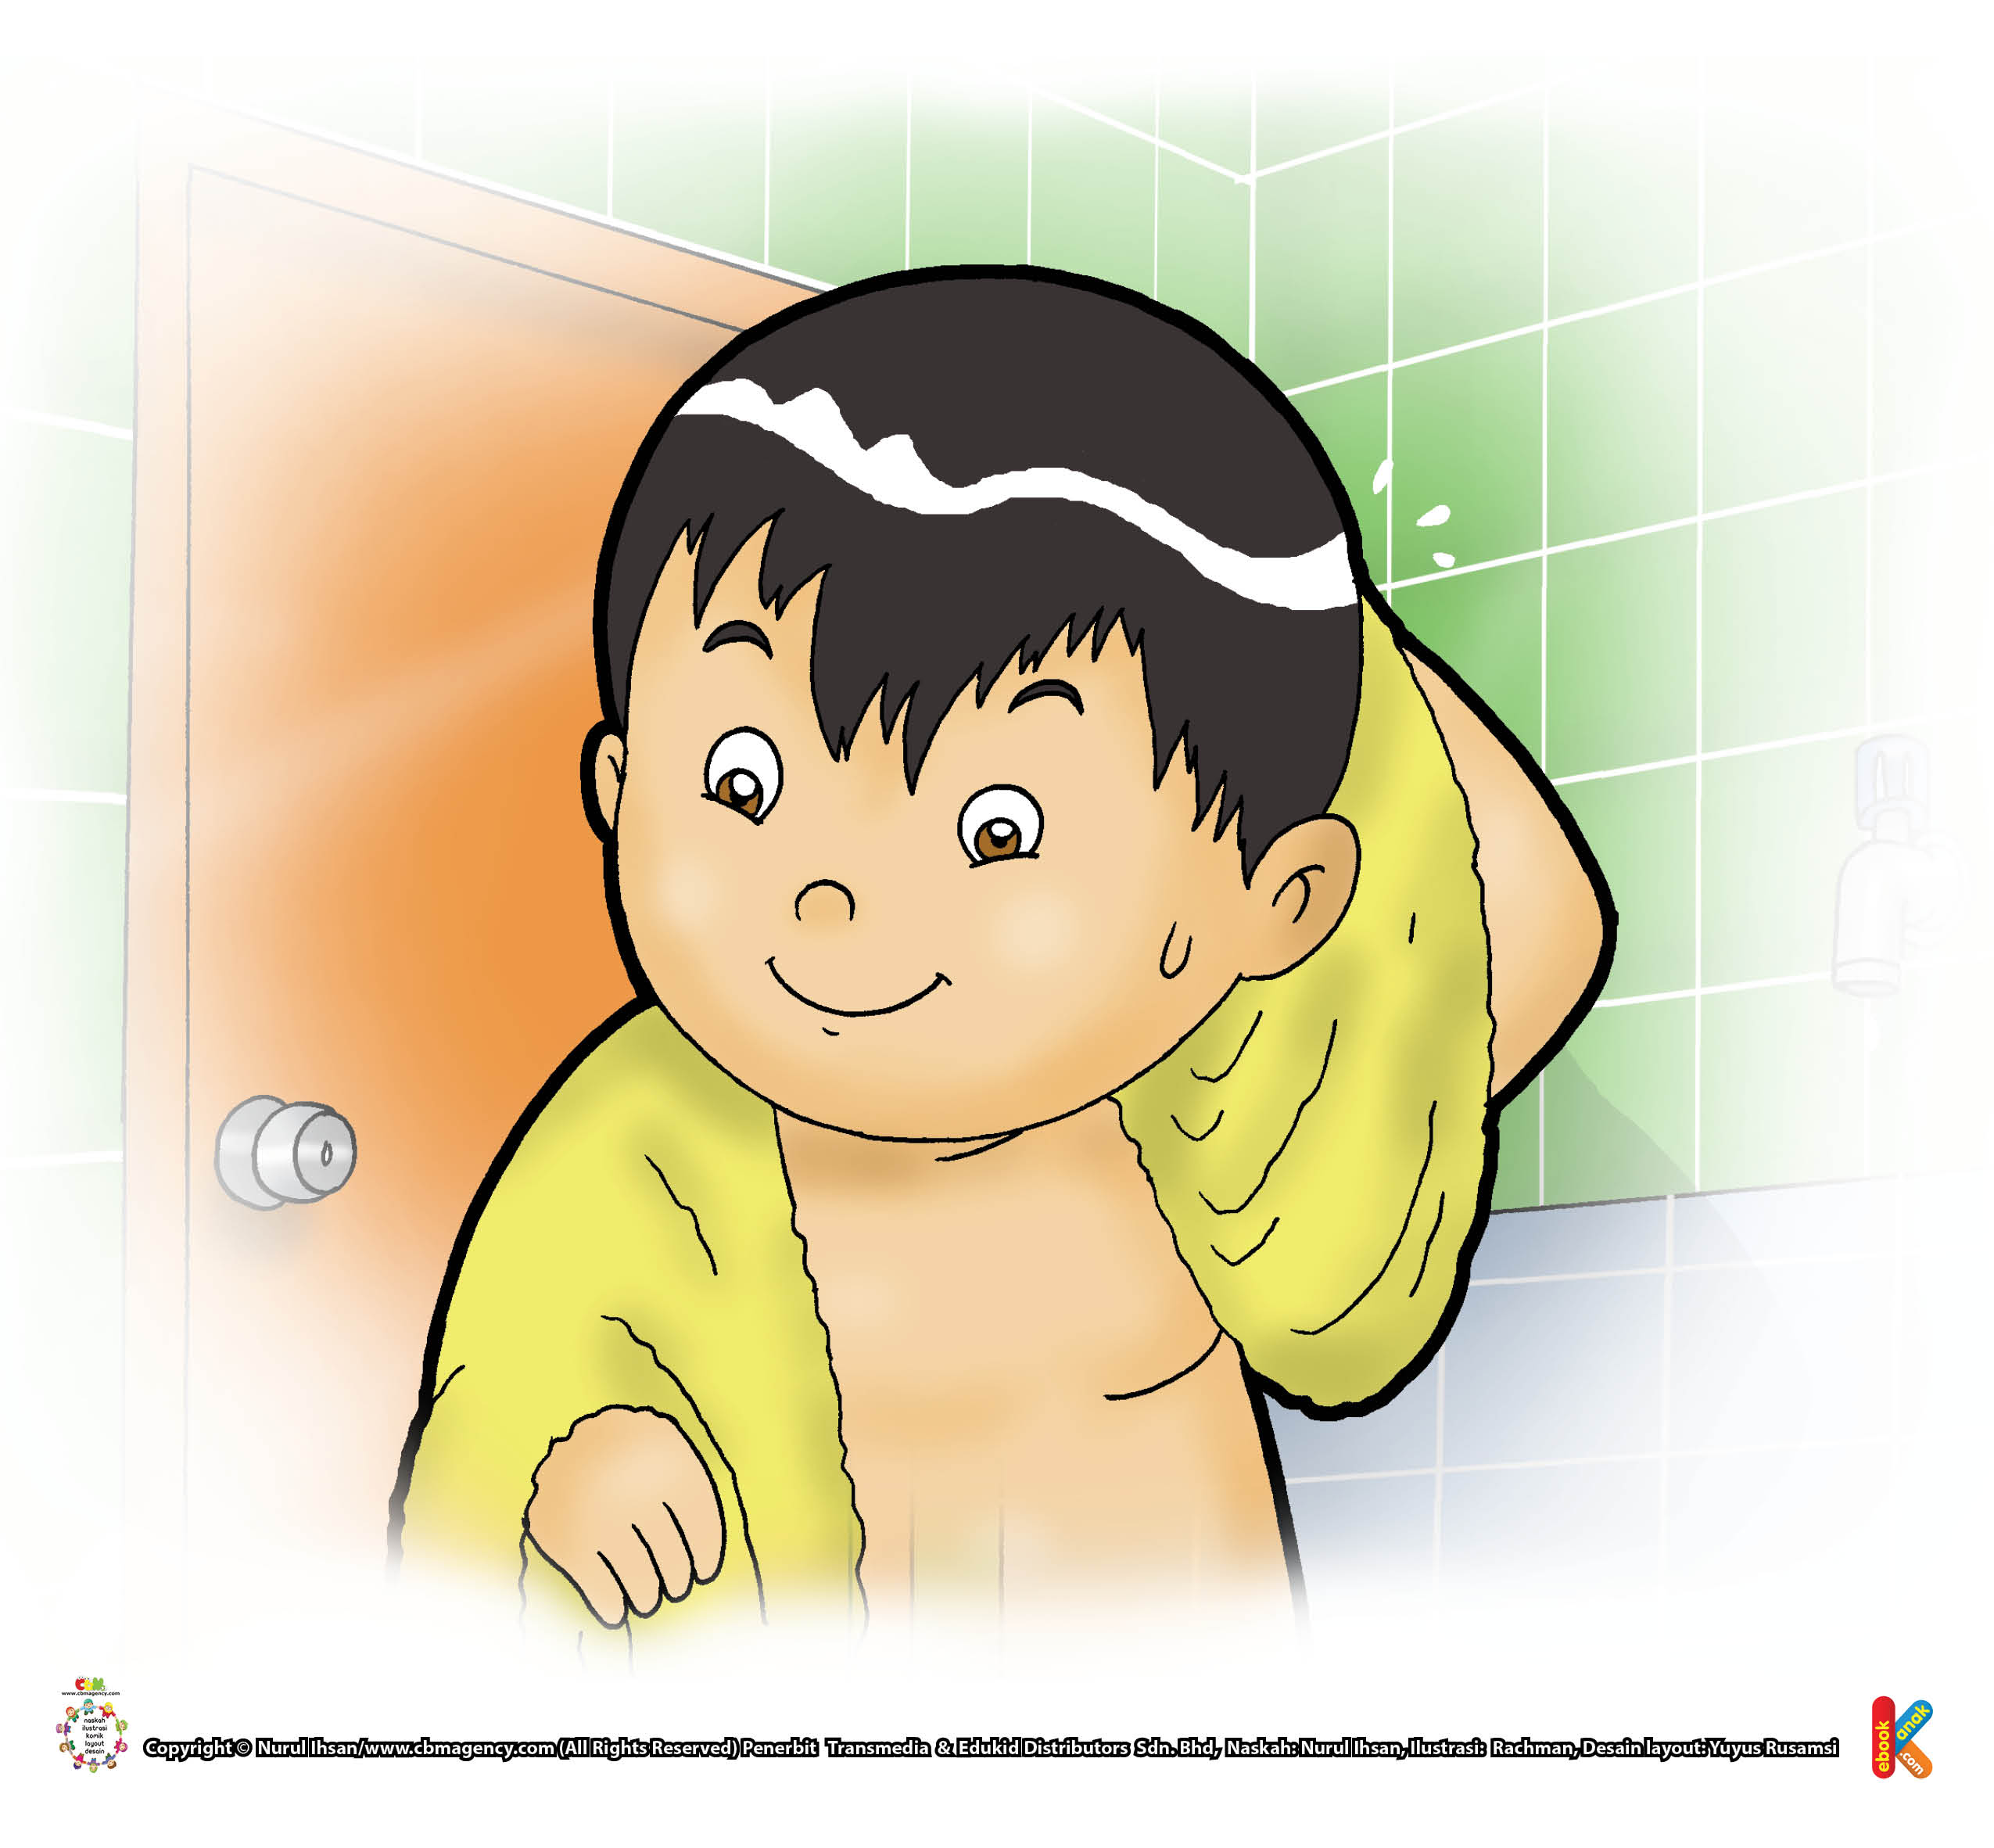 Untuk mandi, Husna mengisi air ke dalam bak mandi secukupnya. Setelah mandi, tak lupa Husna mematikan krannya.